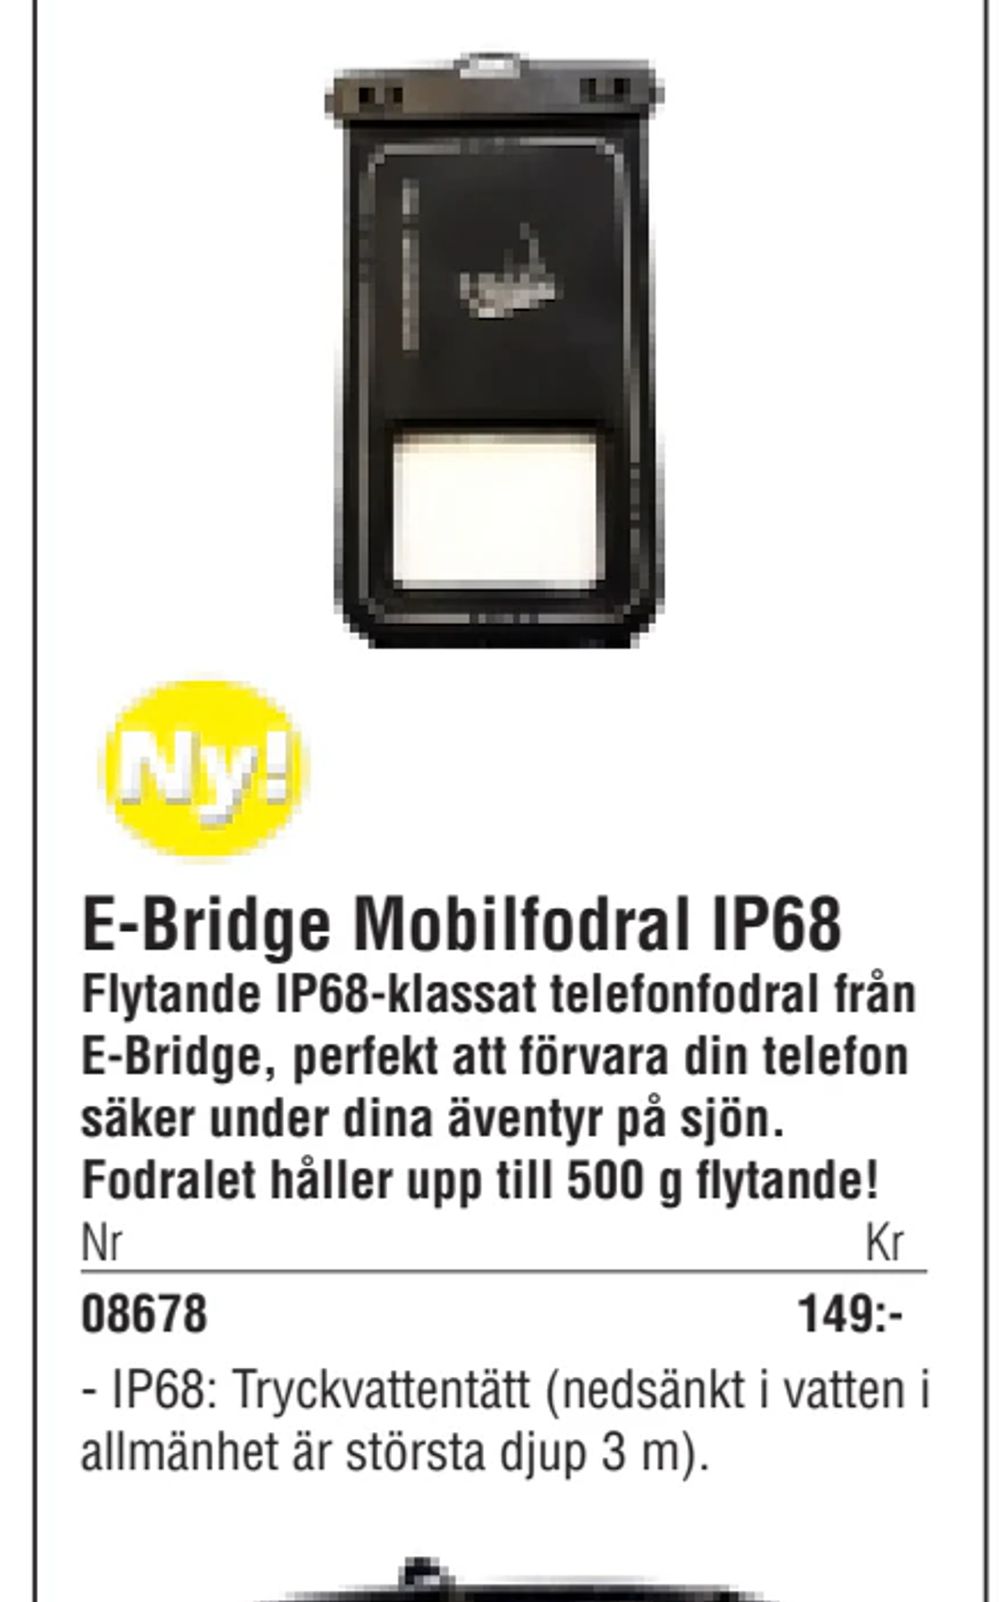 Erbjudanden på E-Bridge Mobilfodral IP68 från Erlandsons Brygga för 149 kr